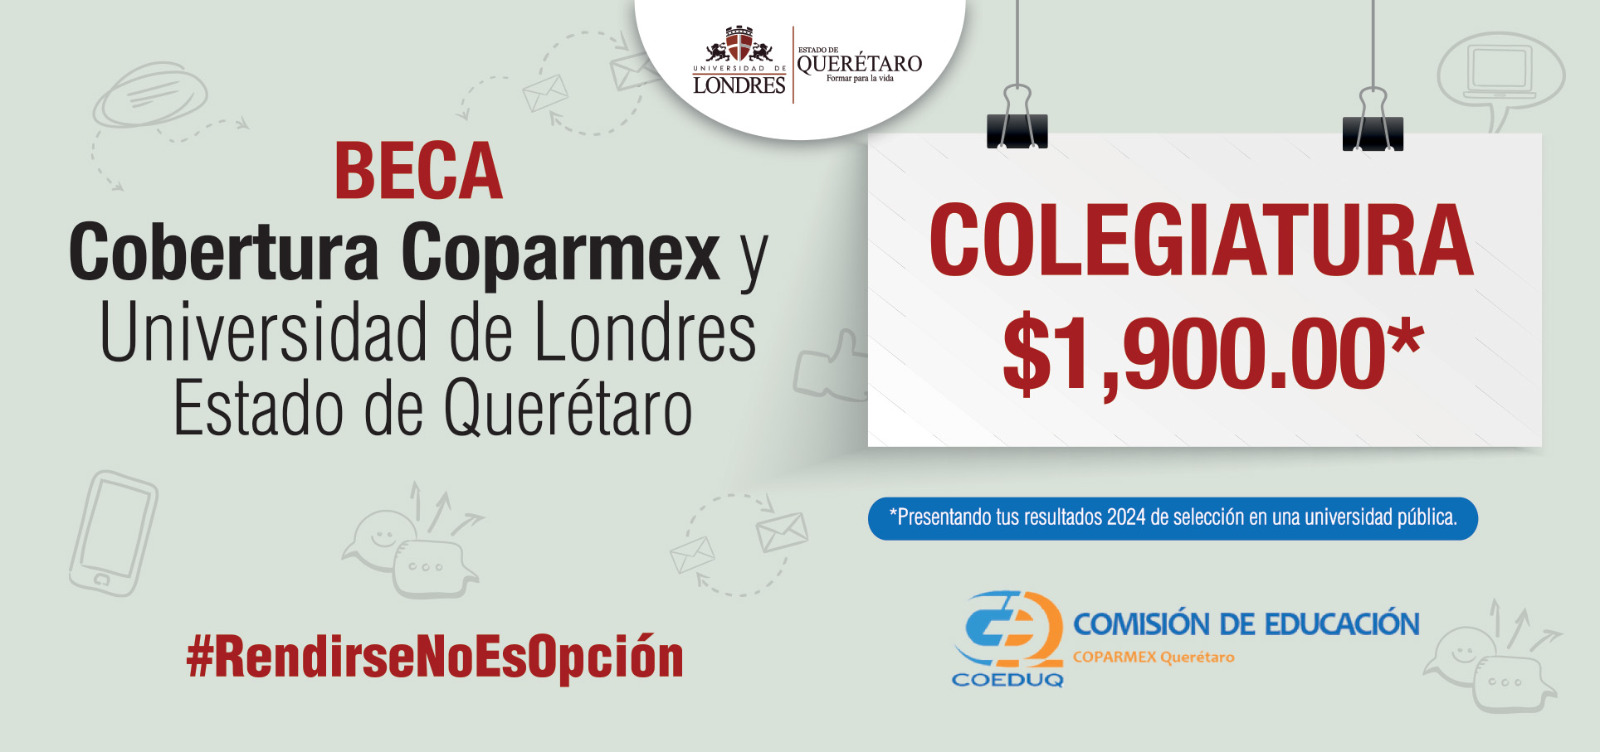 Beca Cobertura Coparmex y Universidad de Londres Estado de Querétaro. Colegiatura $1,900.00.